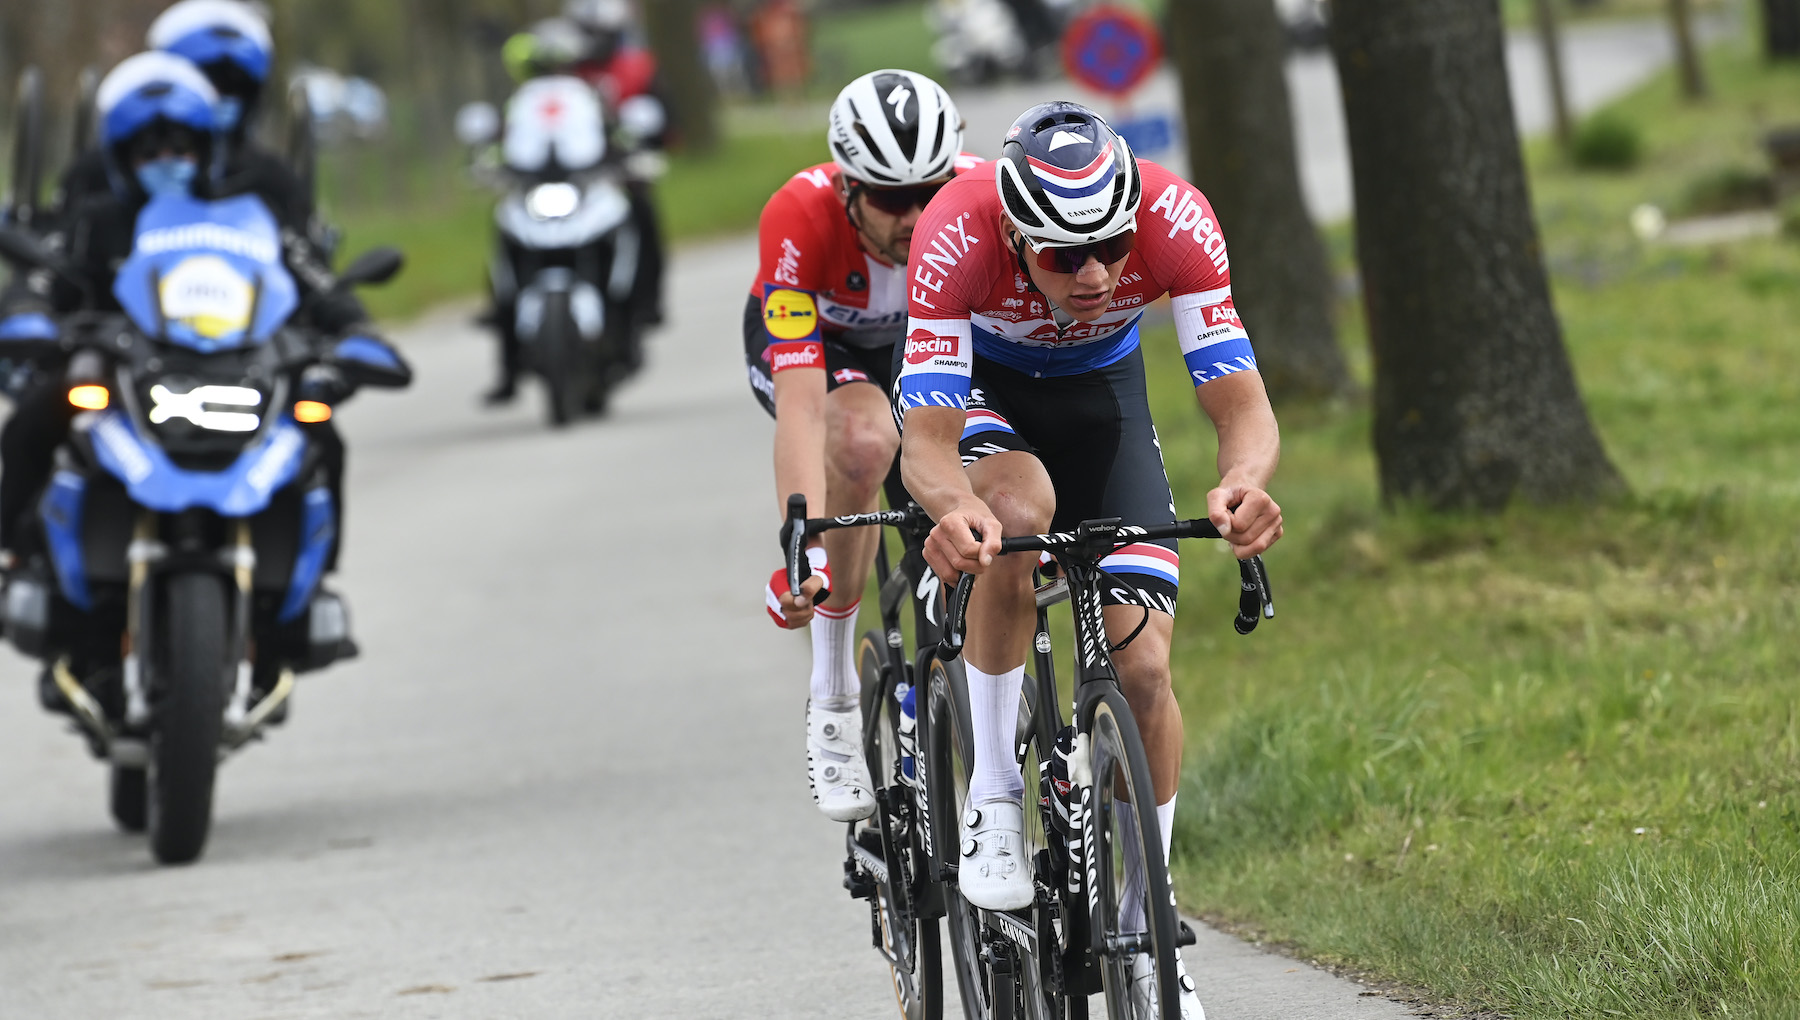 Mathieu van der Poel: El Tour de Francia será mi primer Gran Tour, por lo que una victoria de etapa sería un éxito